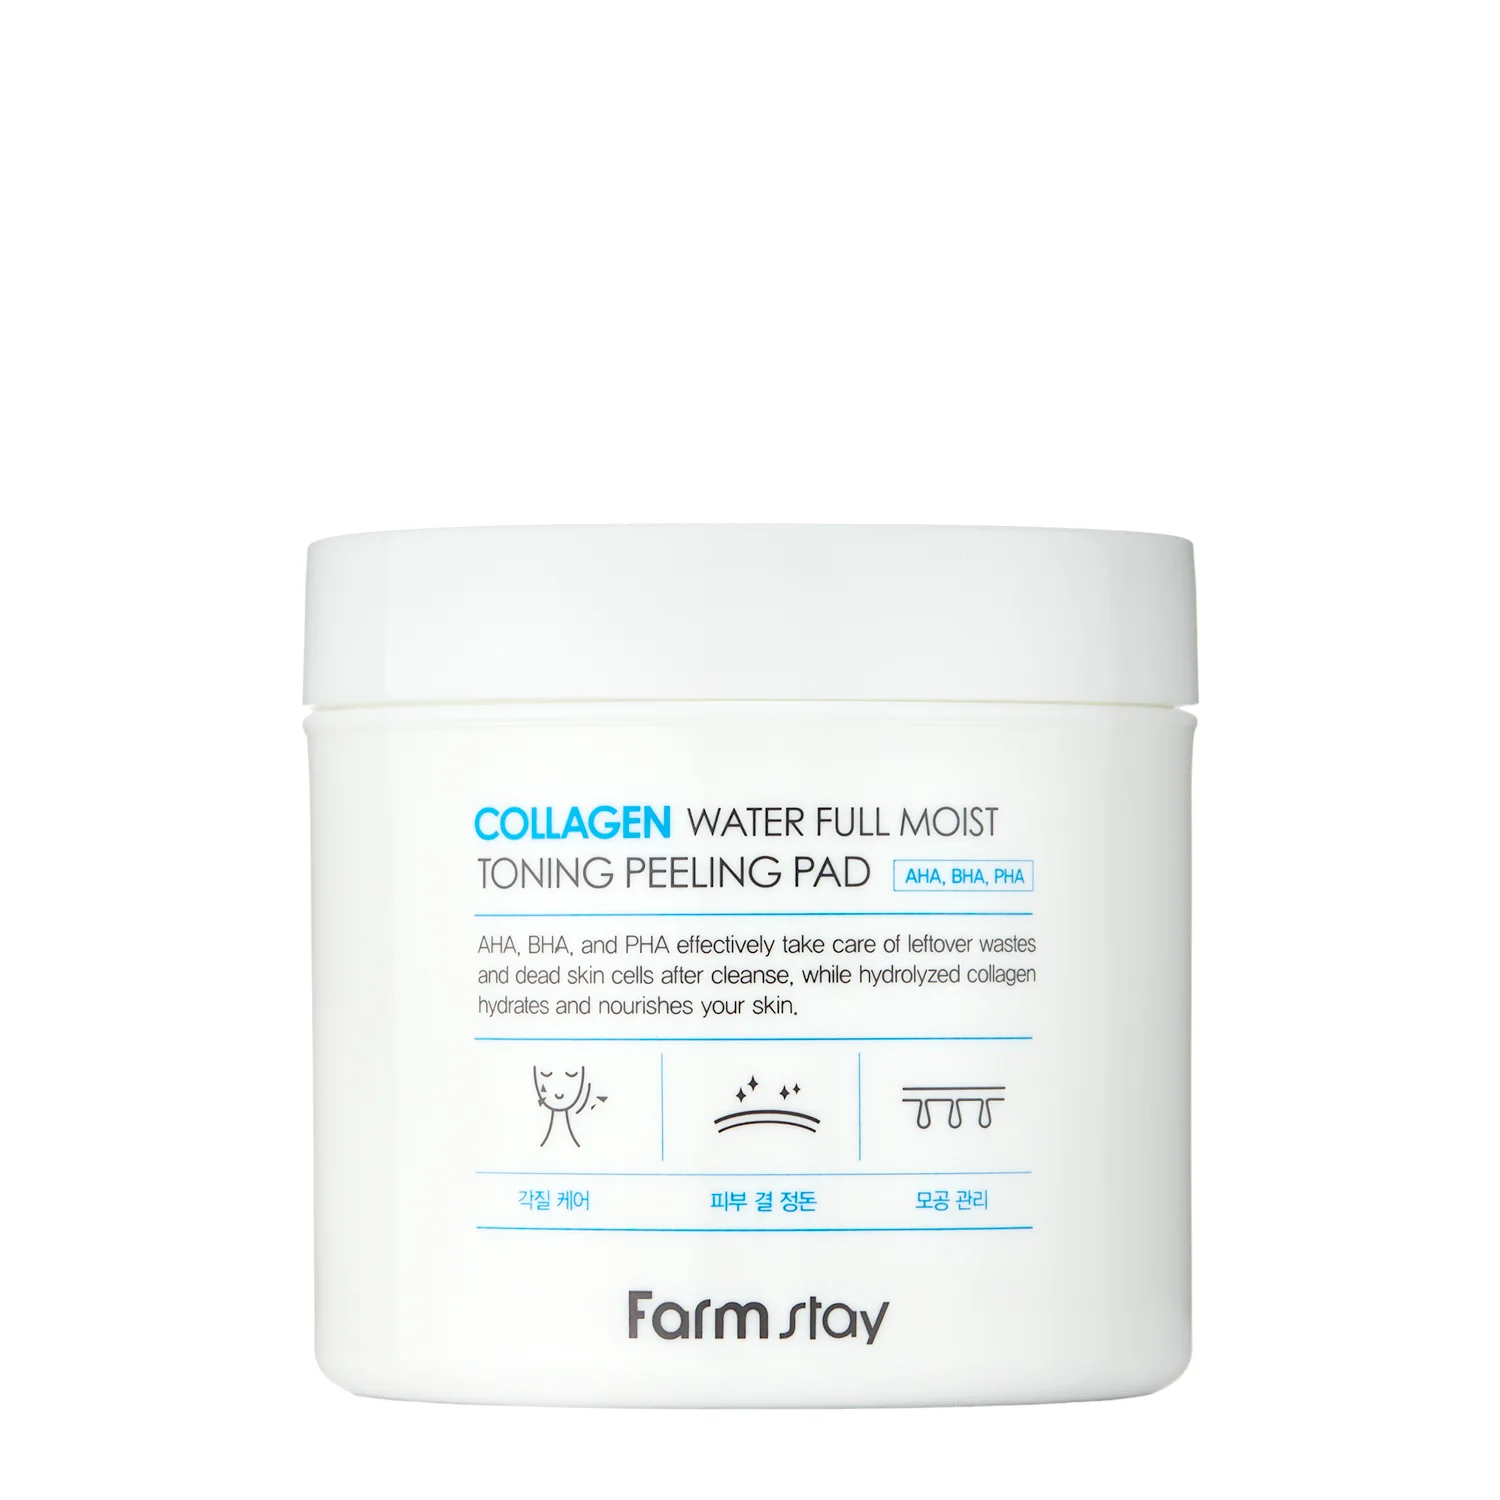 Farmstay - Collagen Water Full Moist Toning Peeling Pad - Тонізуючі та відлущувальні педи з колагеном - 70шт./150ml